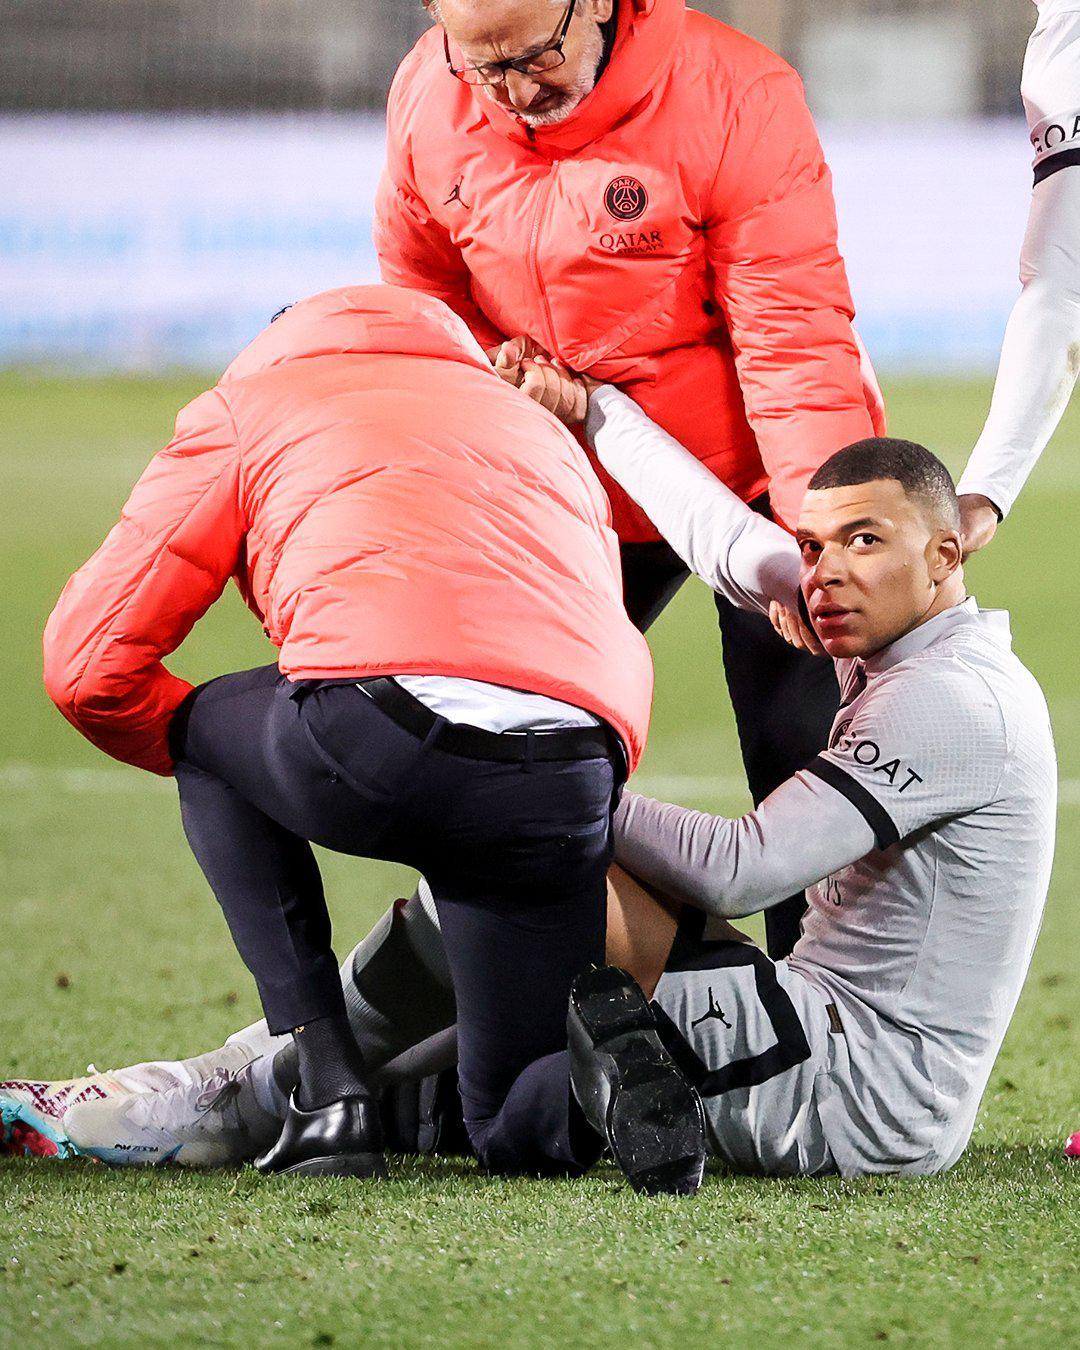 #姆巴佩无缘对阵拜仁# 巴黎官方确认，姆巴佩因大腿肌肉受伤将缺阵3周。北京2月1(1)